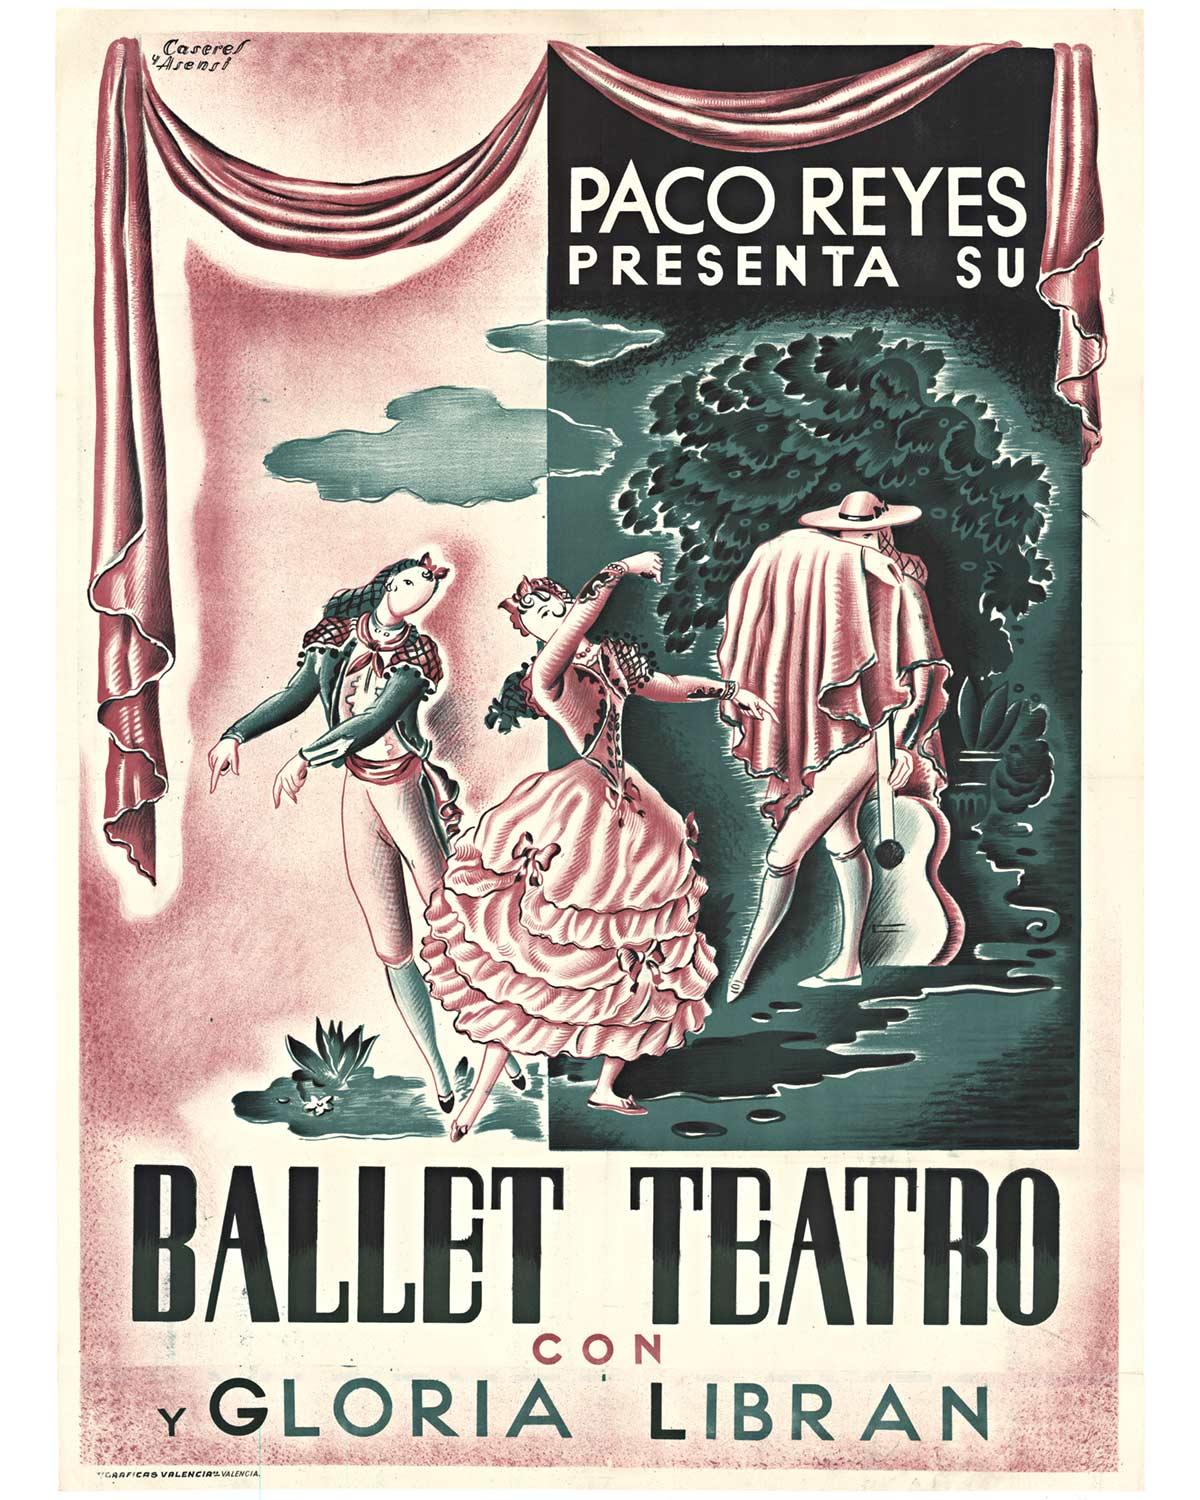 Rafael Caseres Figurative Print – Original Paco Reyes Presenta Su Ballet Teatro con y Gloria Libran, Vintage-Poster